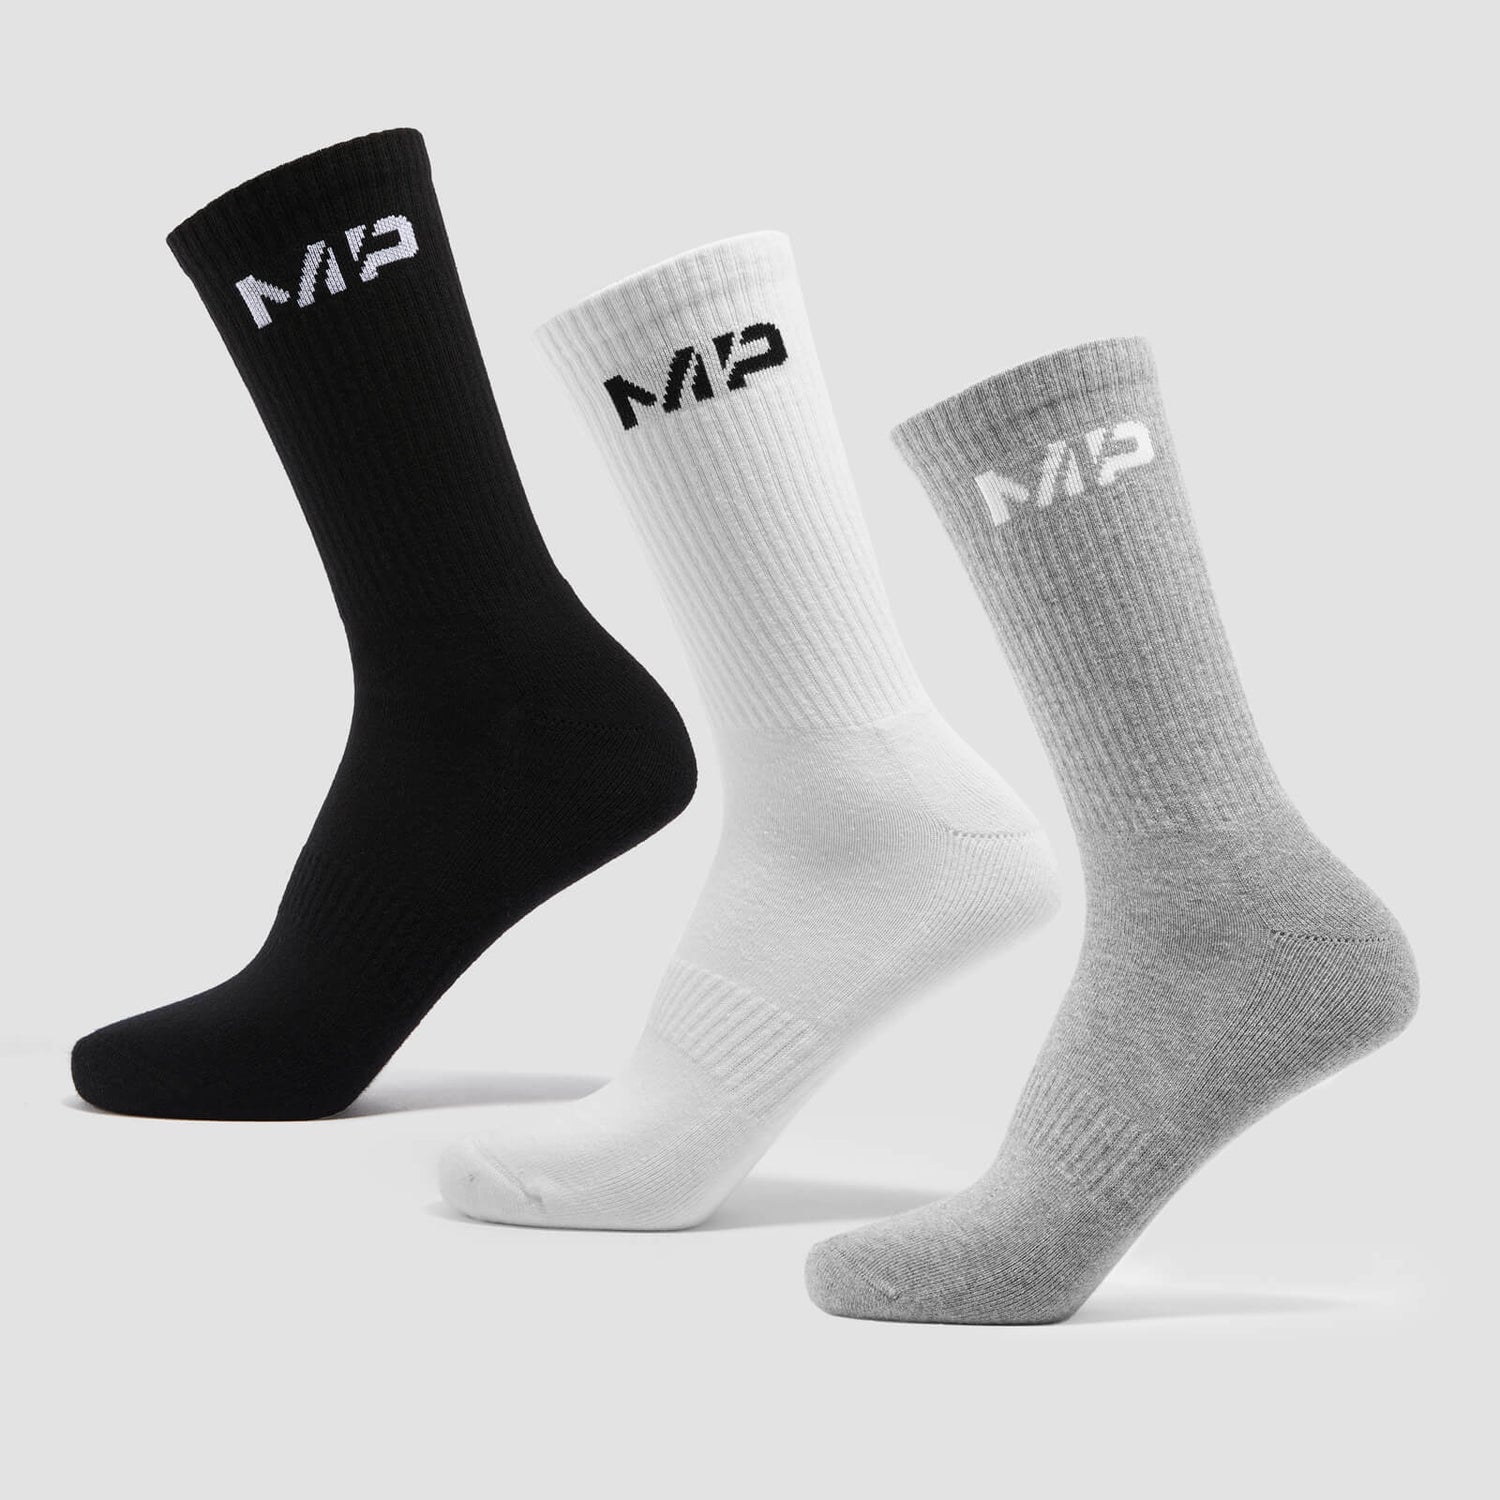 MP Ženske Essentials Crew čarape (3 pakovanje) - crne/bijela/zrnasto siva boja - UK 2-5